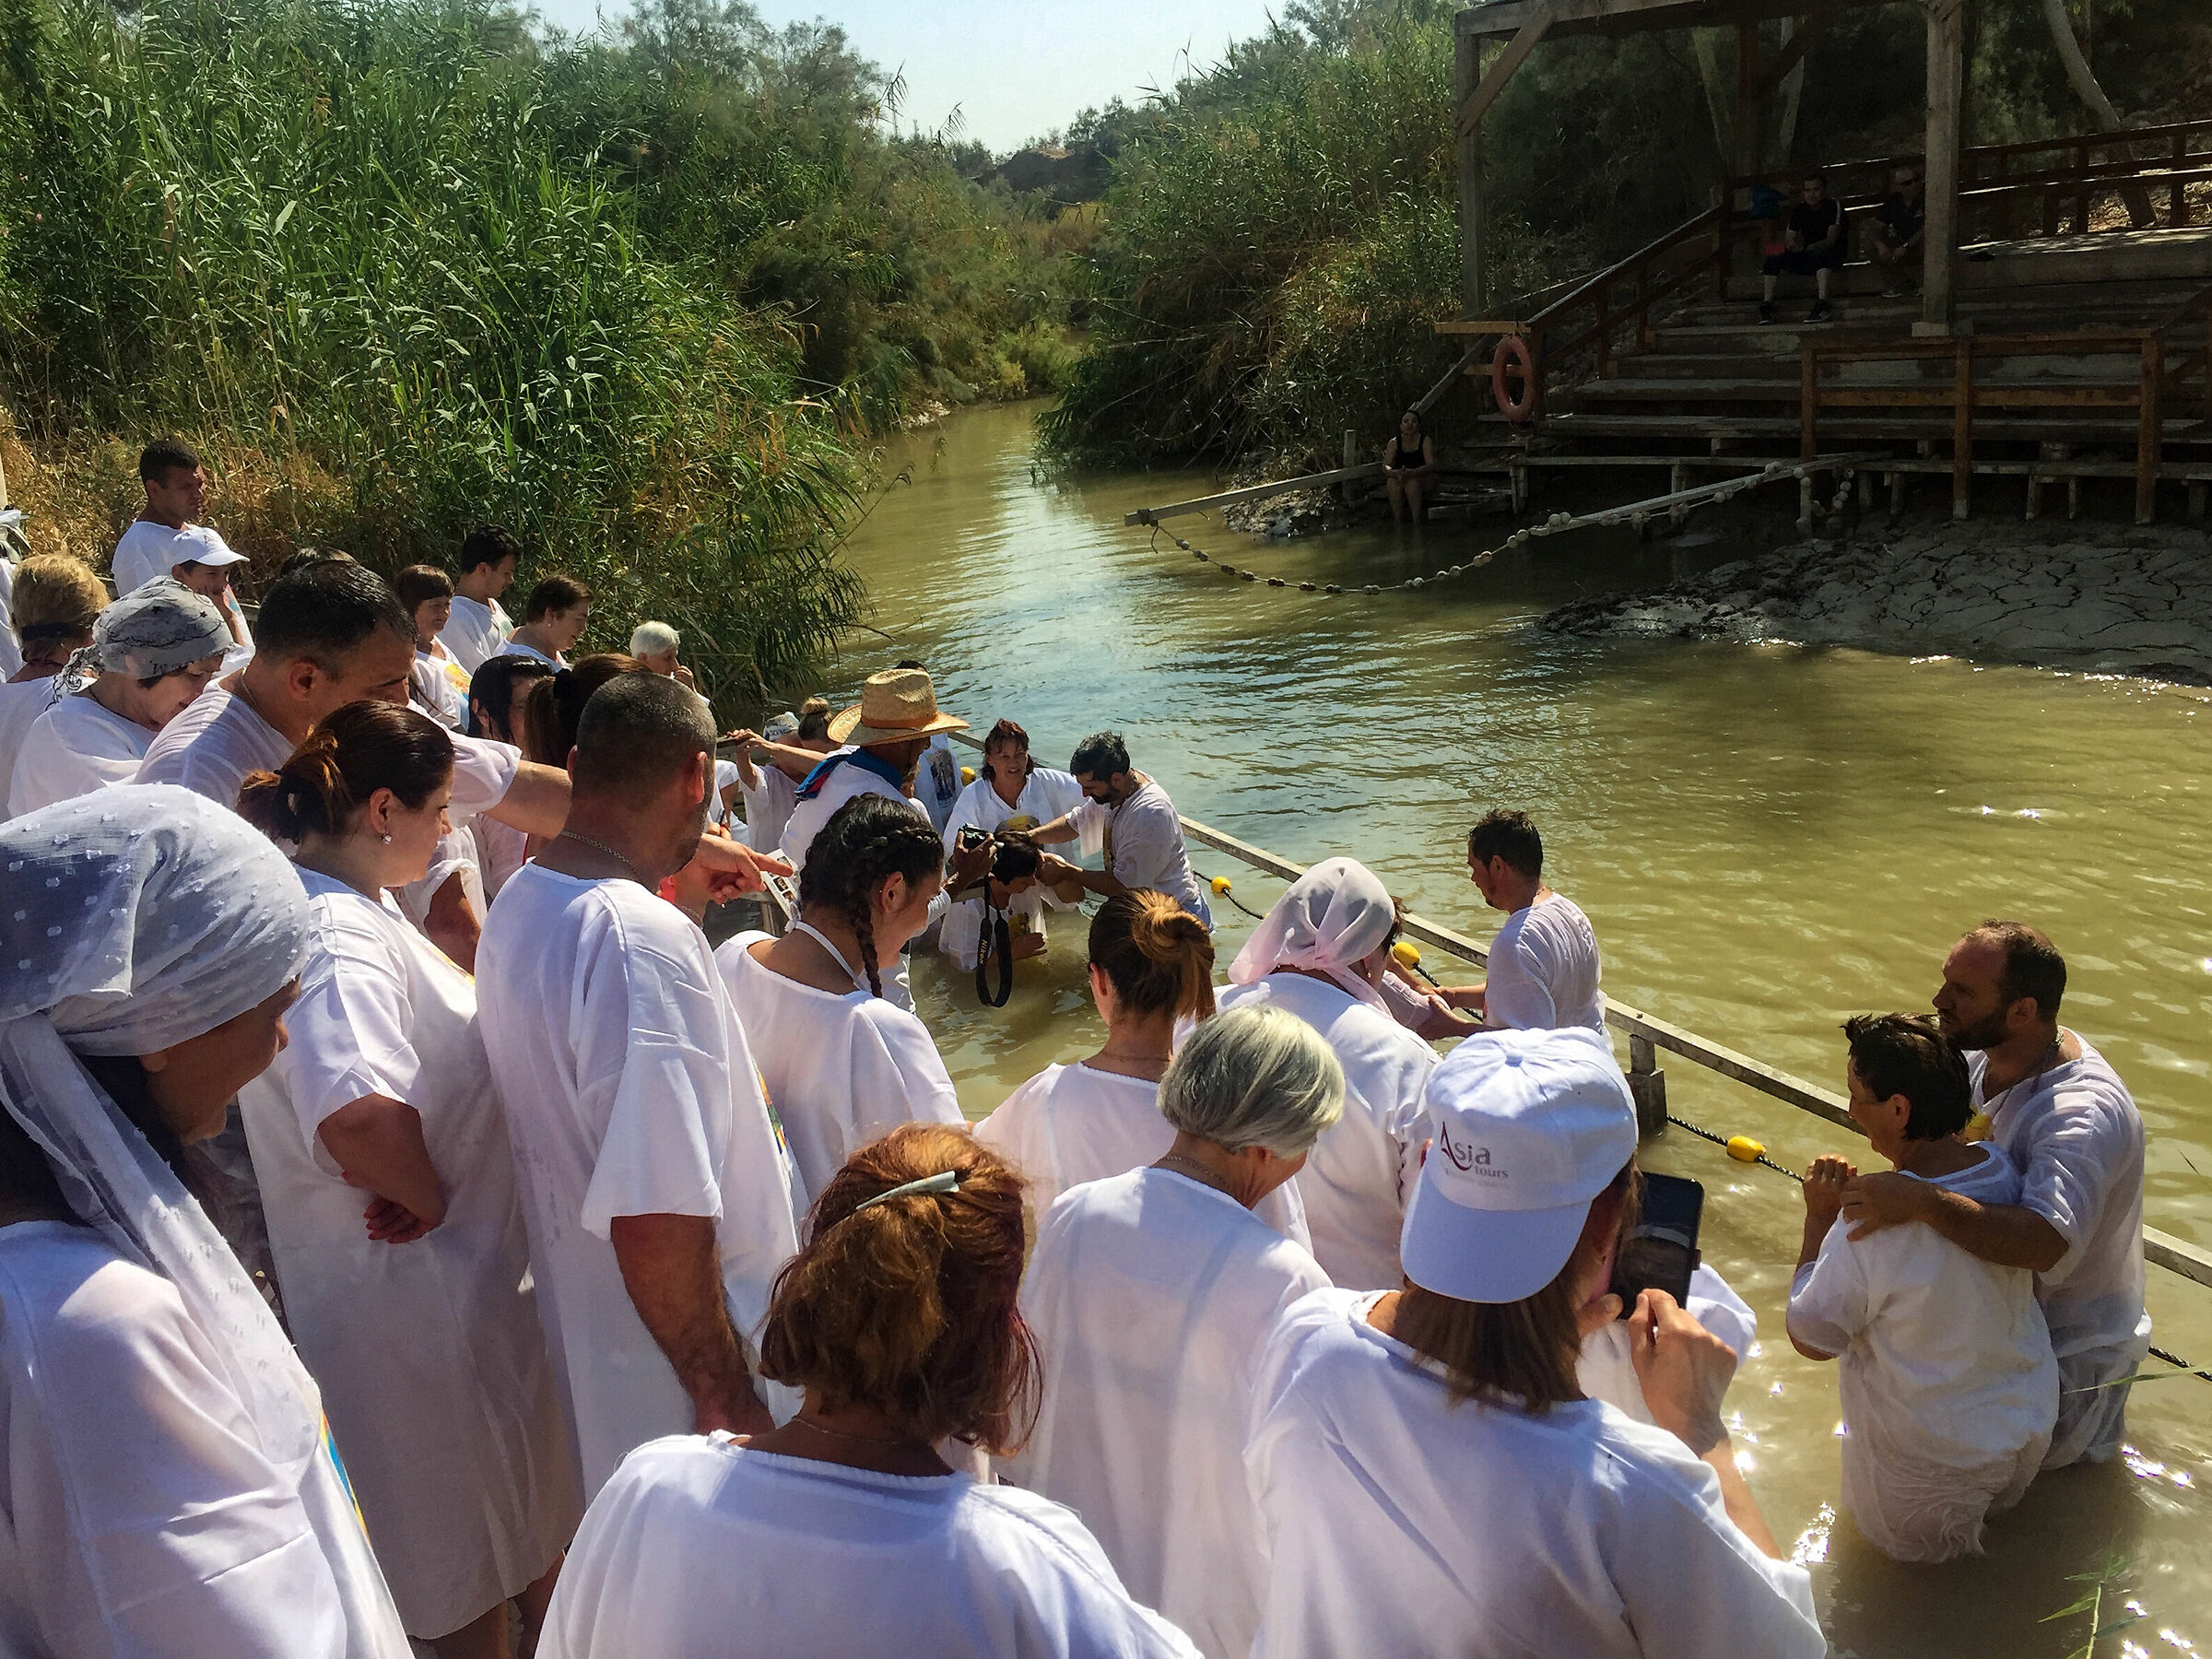 baptism in the Jordan...